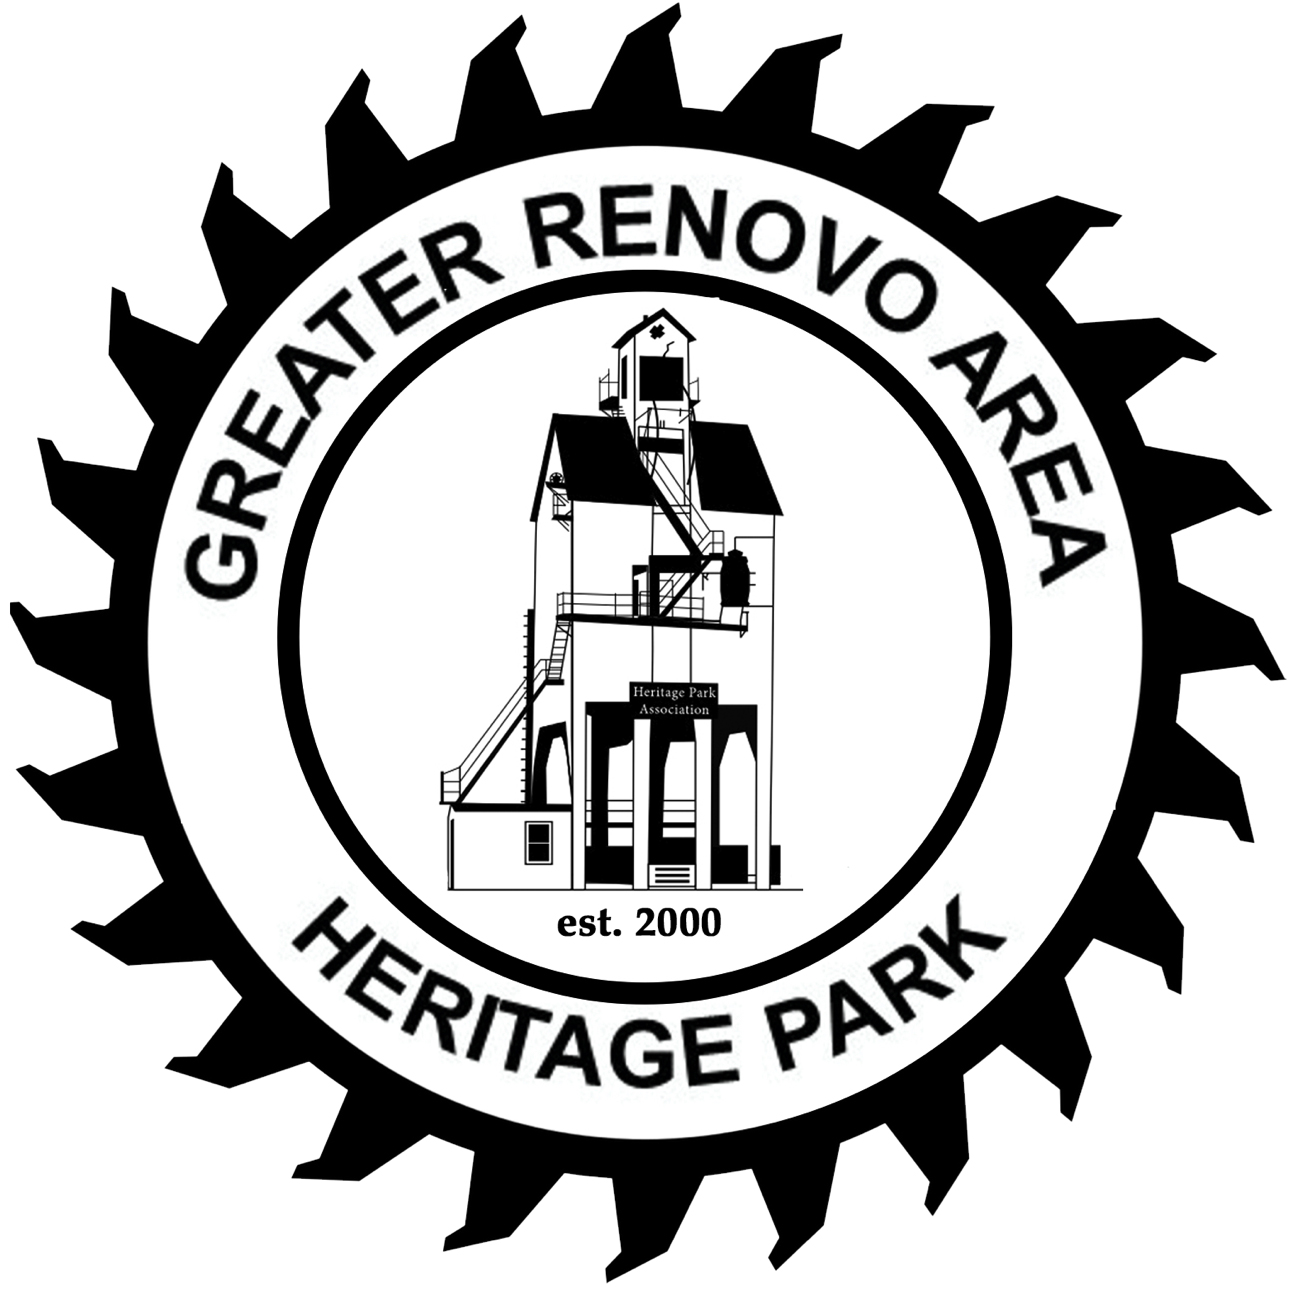 The Greater Renovo Area Heritage Park | Arthur D. Pierson | The Greater Renovo Area Heritage Park